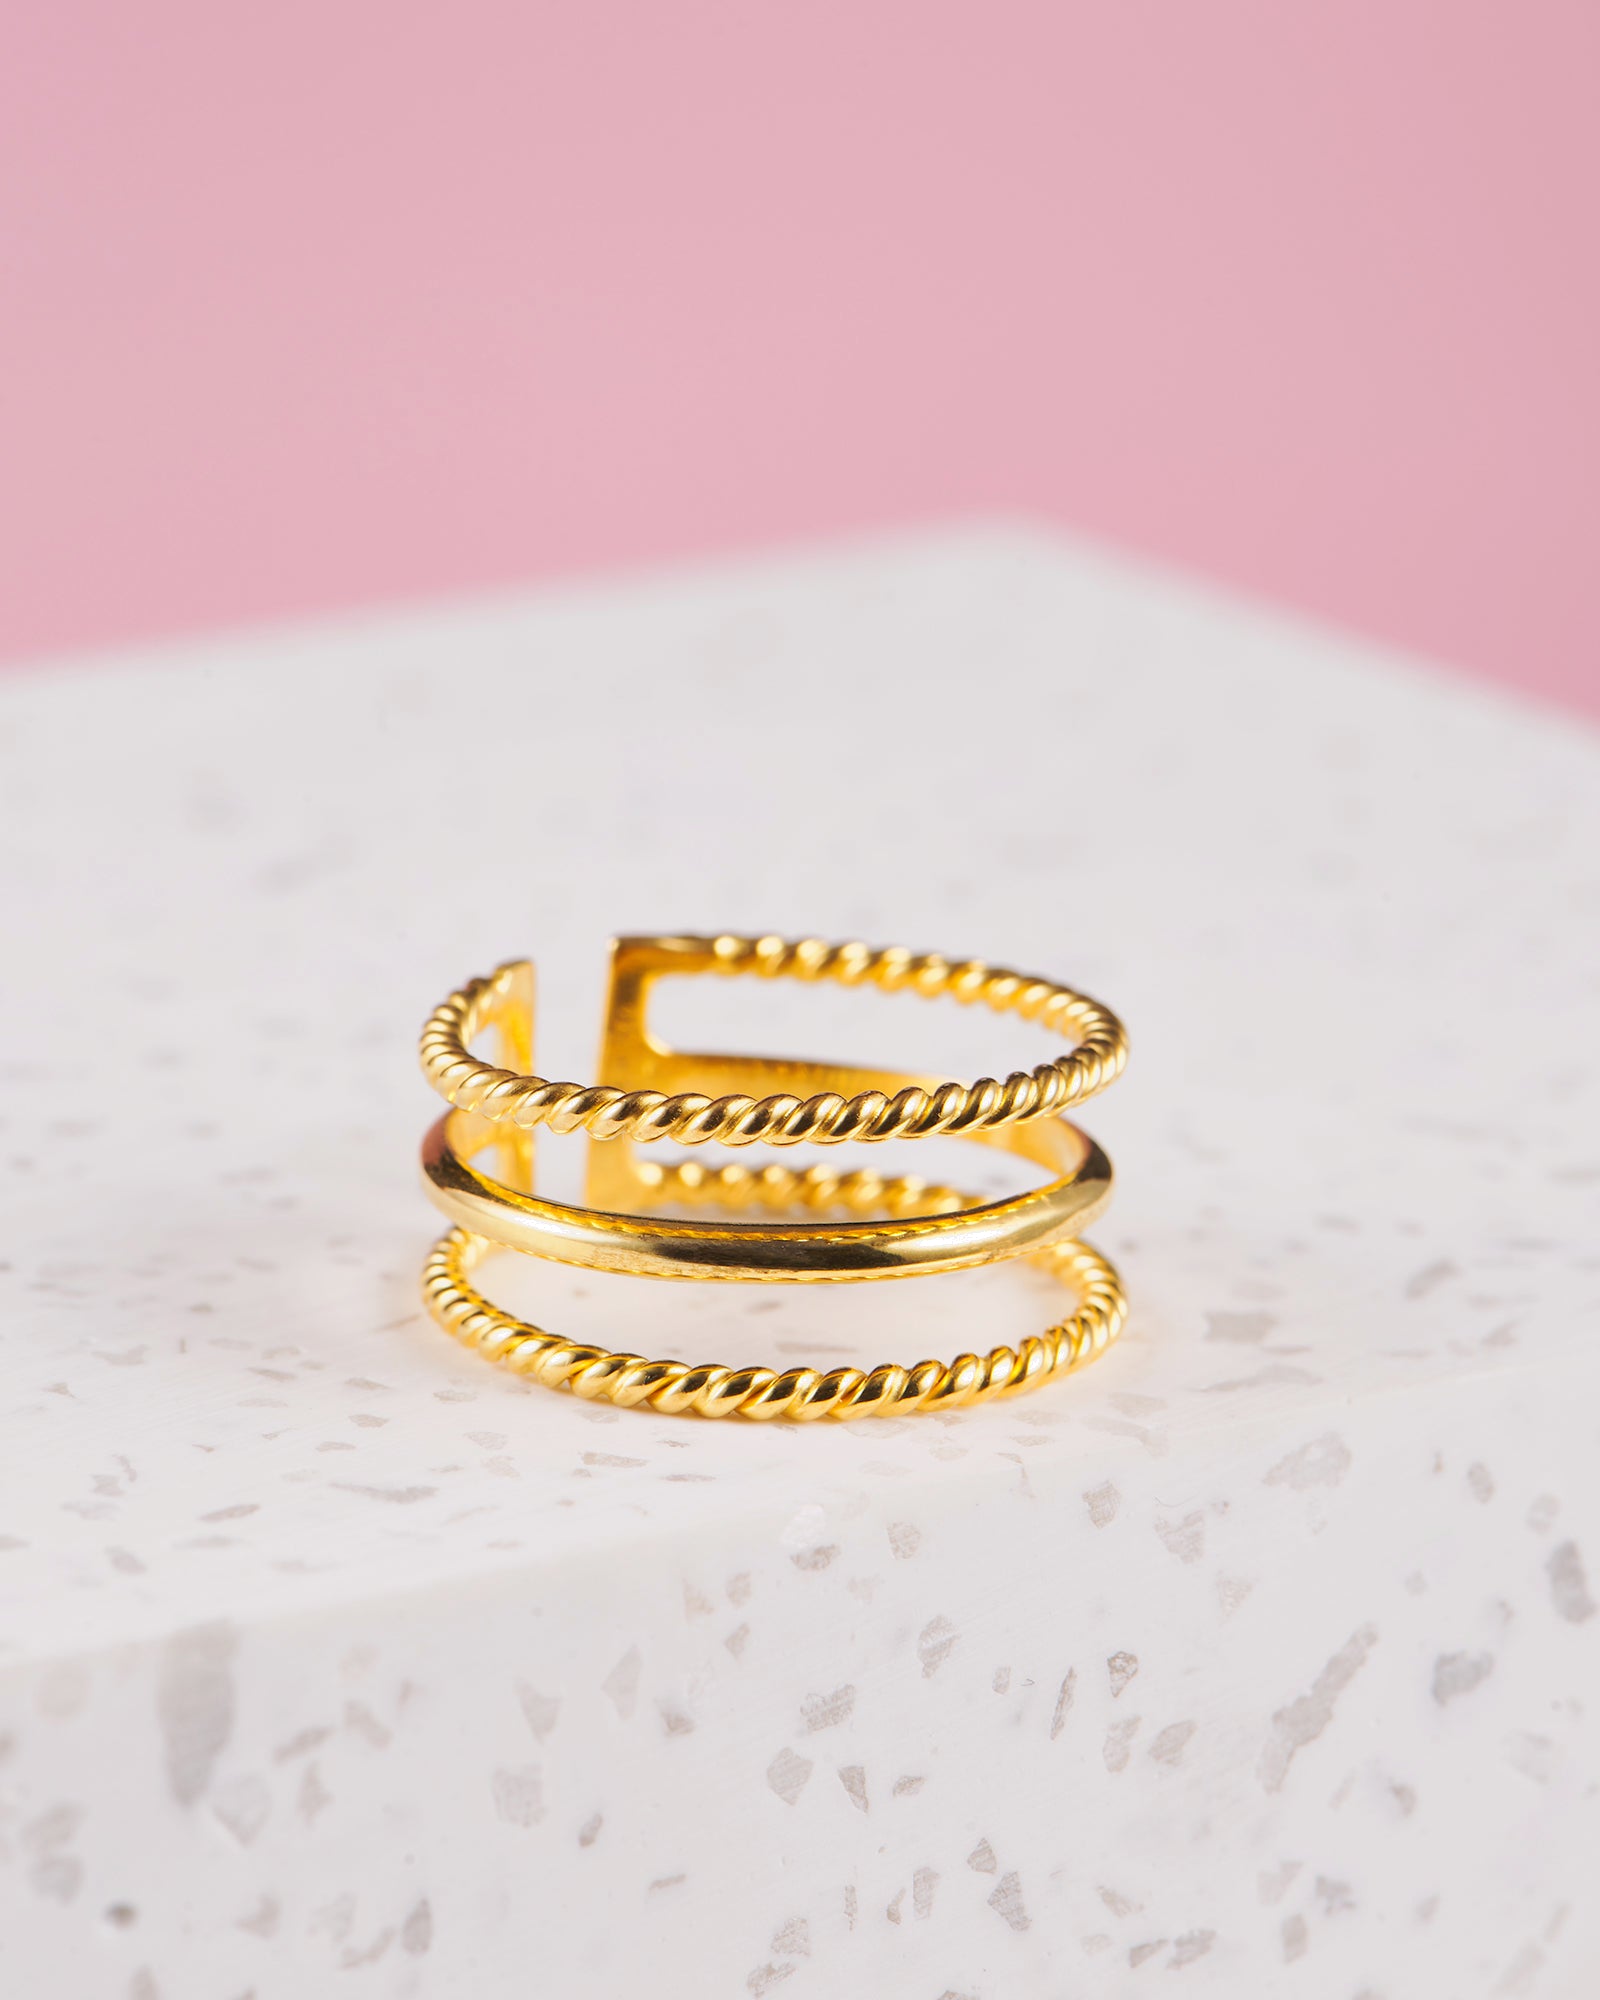 Handmade with love | VERLAN Jewellery | Fairfashion | Handgemachte Ringe im Boho Look aus Bali | Fair und nachhaltig handgefertigter Schmuck | Verstellbarer Ring | Kombi & adjustable Ring